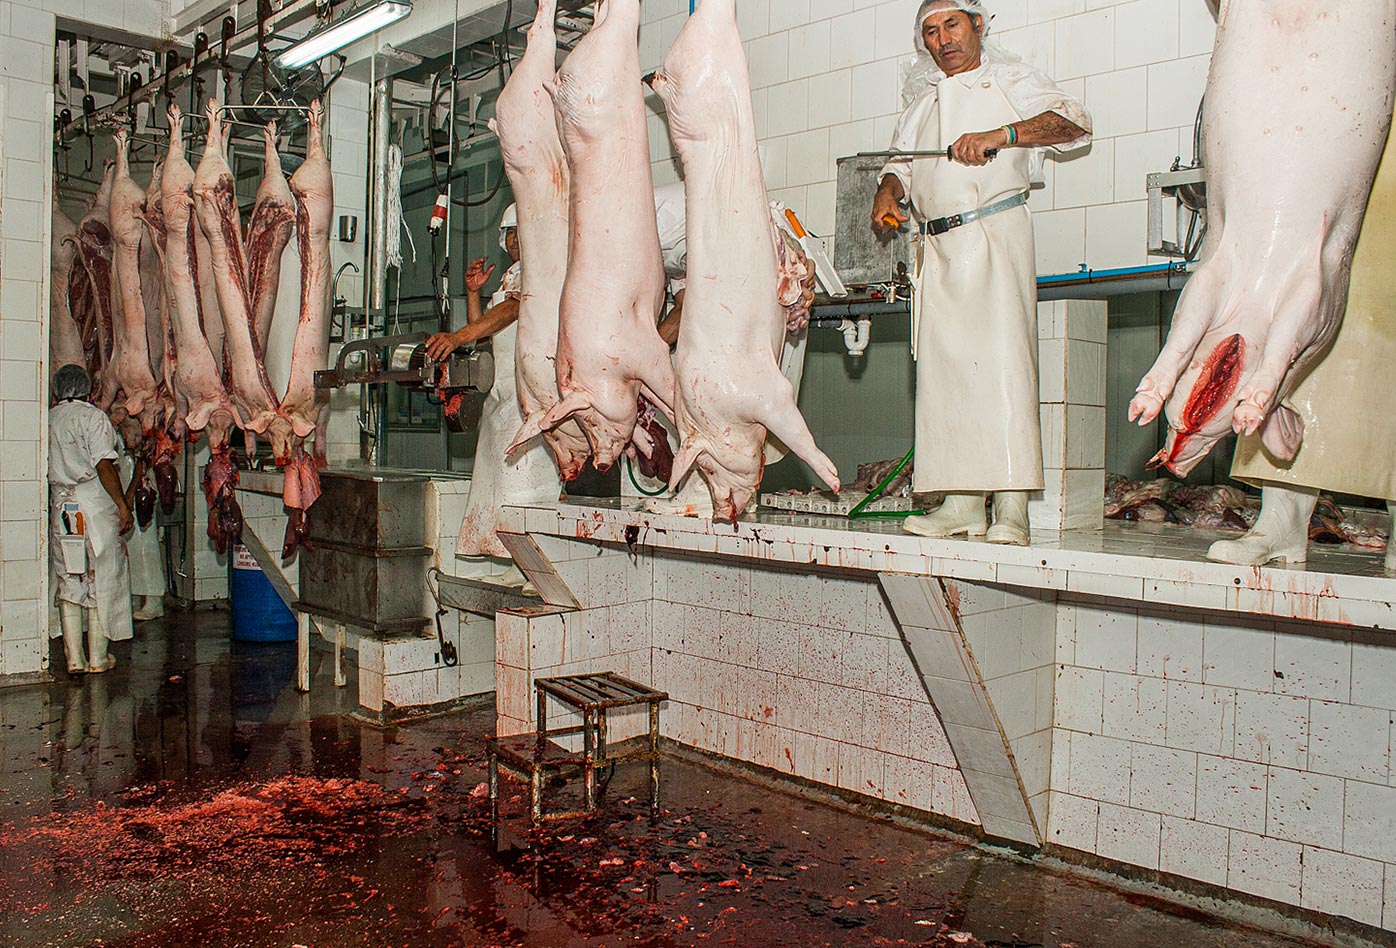 Trabajadores de pie sobre los mostradores para procesar cerdos muertos en un matadero en Chile, mientras la sangre cubre el suelo.